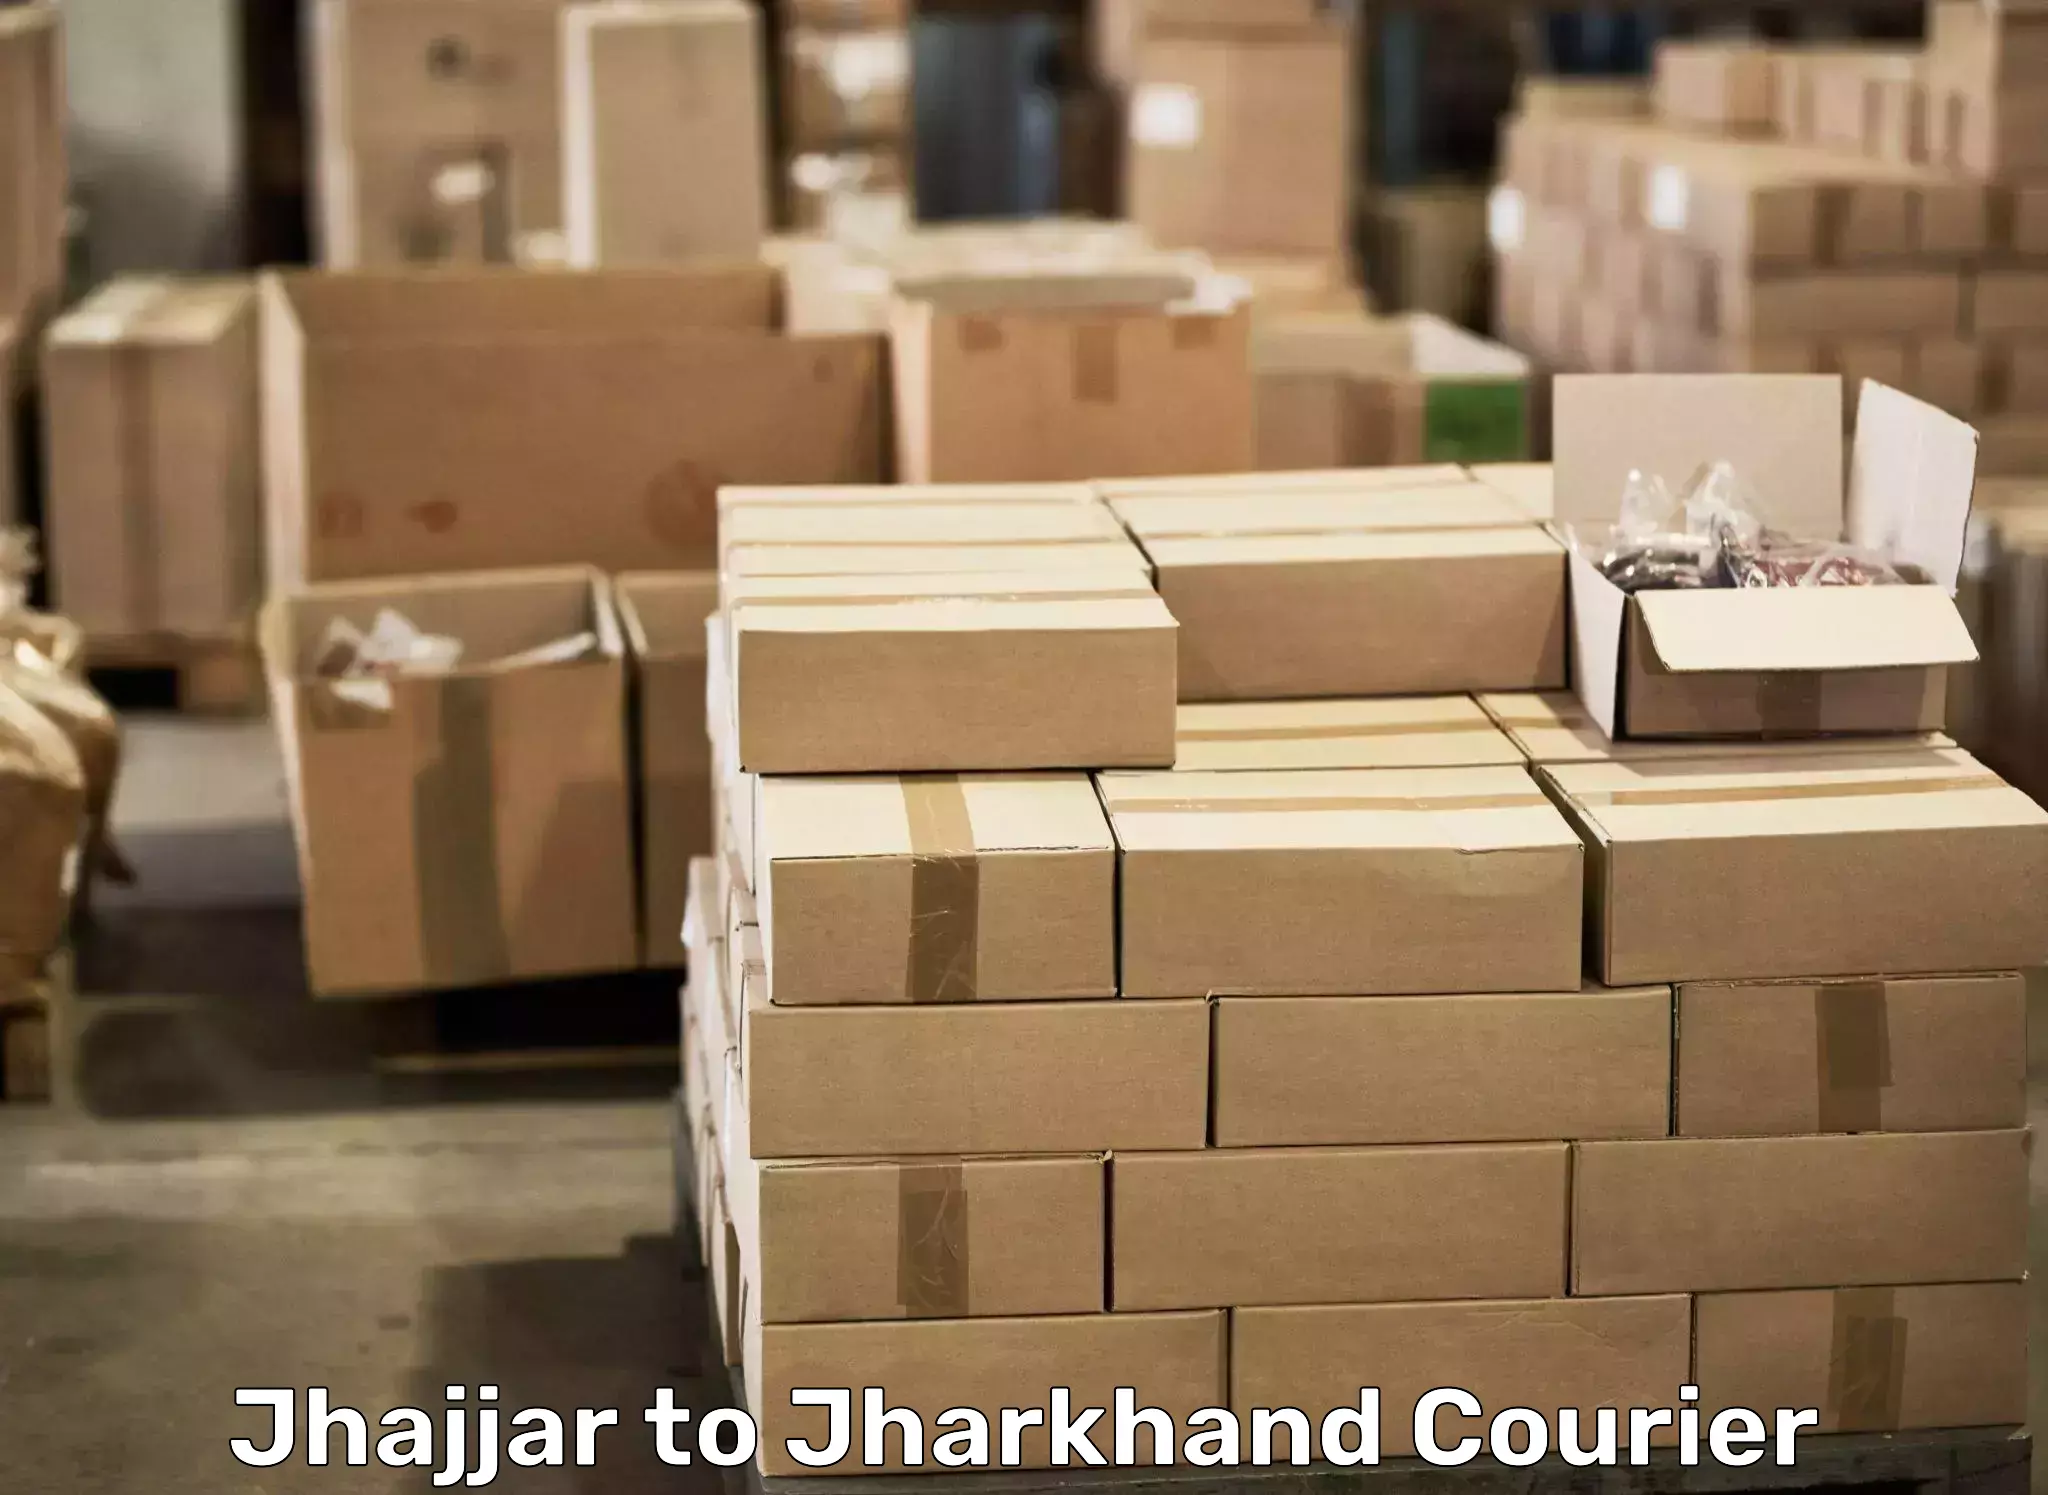 Furniture transport professionals Jhajjar to Bokaro